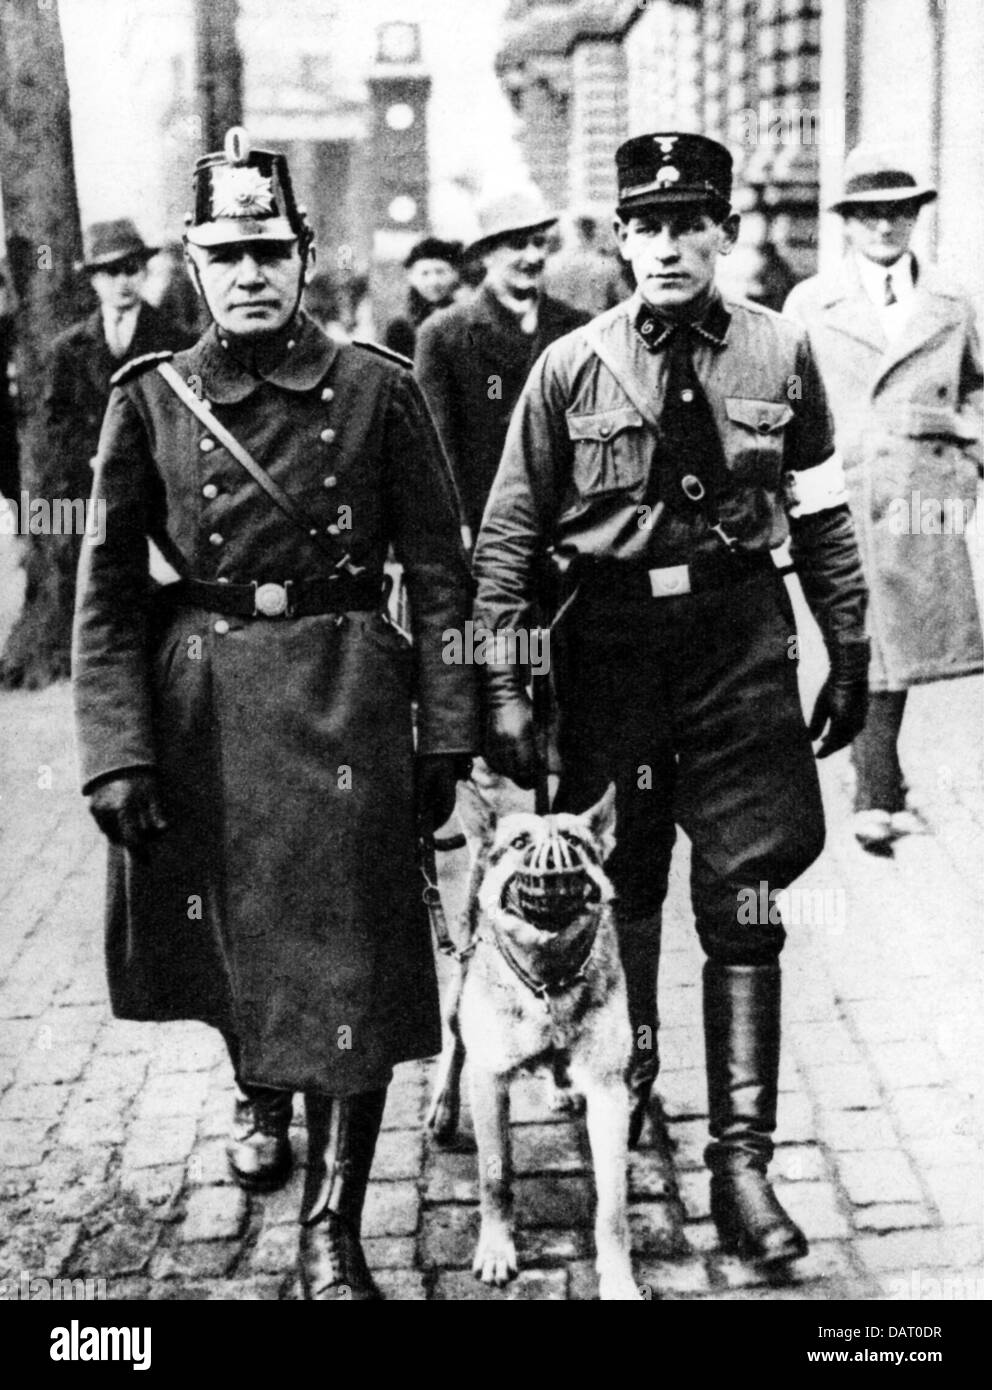 Nazional socialismo, organizzazioni, polizia, SS Trooper come poliziotto ausiliario di pattuglia con un regolare poliziotto, Berlino, marzo 1933, diritti aggiuntivi-clearences-non disponibile Foto Stock